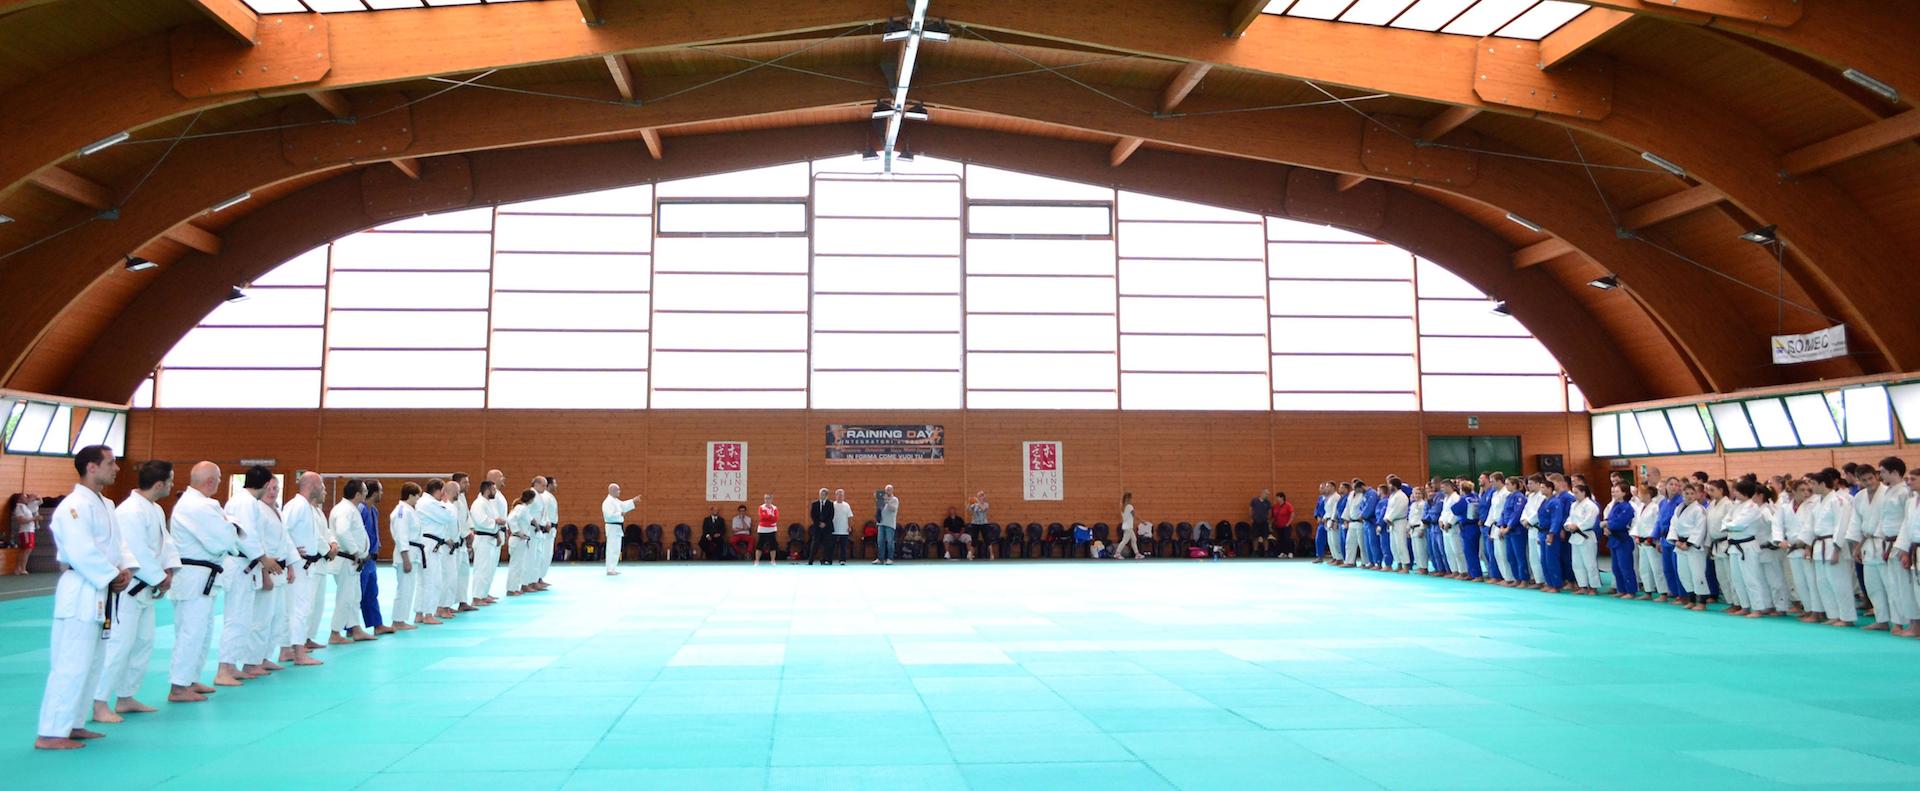 /immagini/Judo/2014/2014 07 21 Parma01.jpg